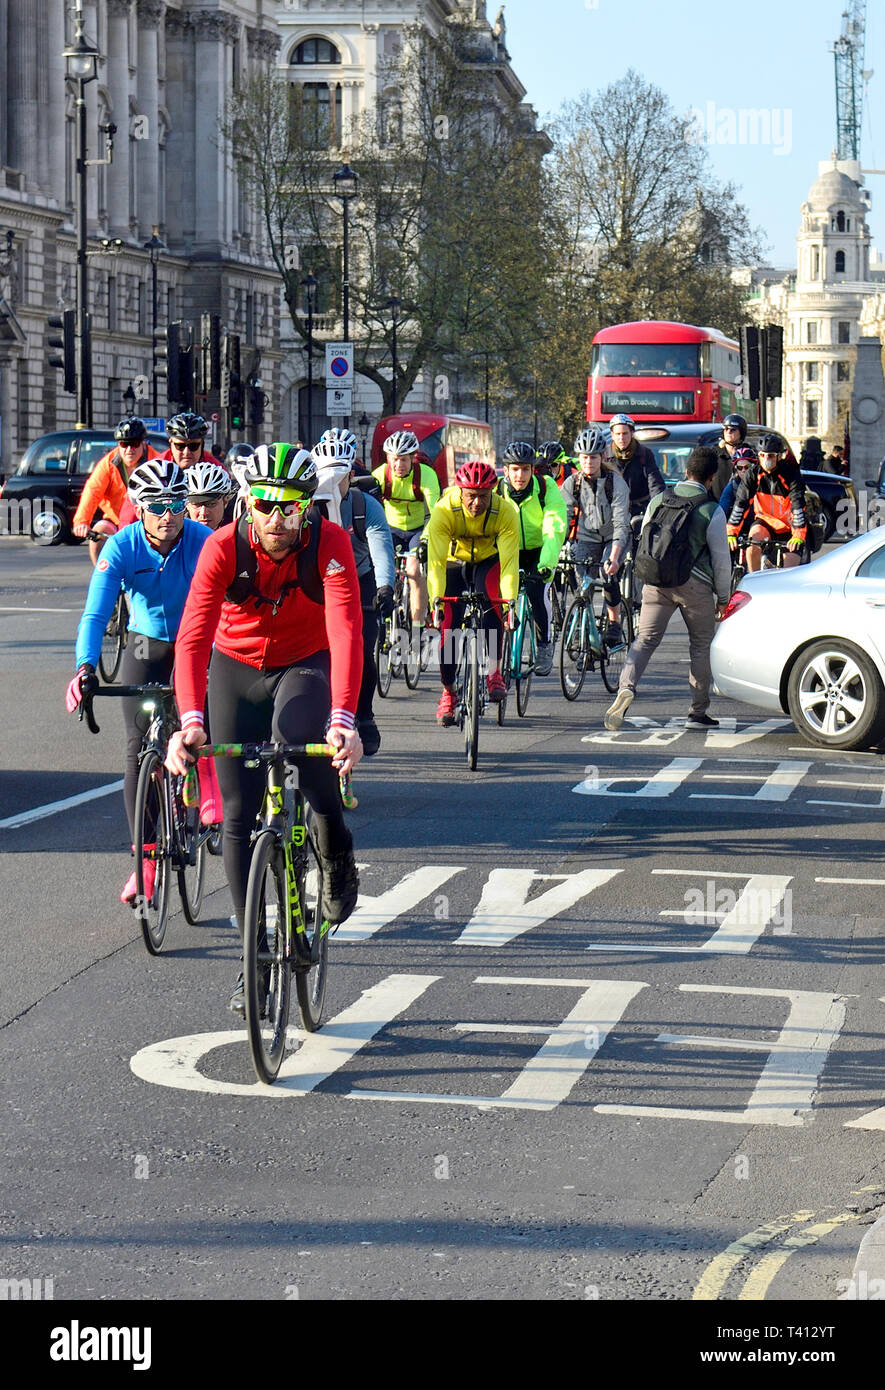 Londra, Inghilterra, Regno Unito. I ciclisti di indossare i colori vivaci dei vestiti in piazza del Parlamento, Westminster Foto Stock